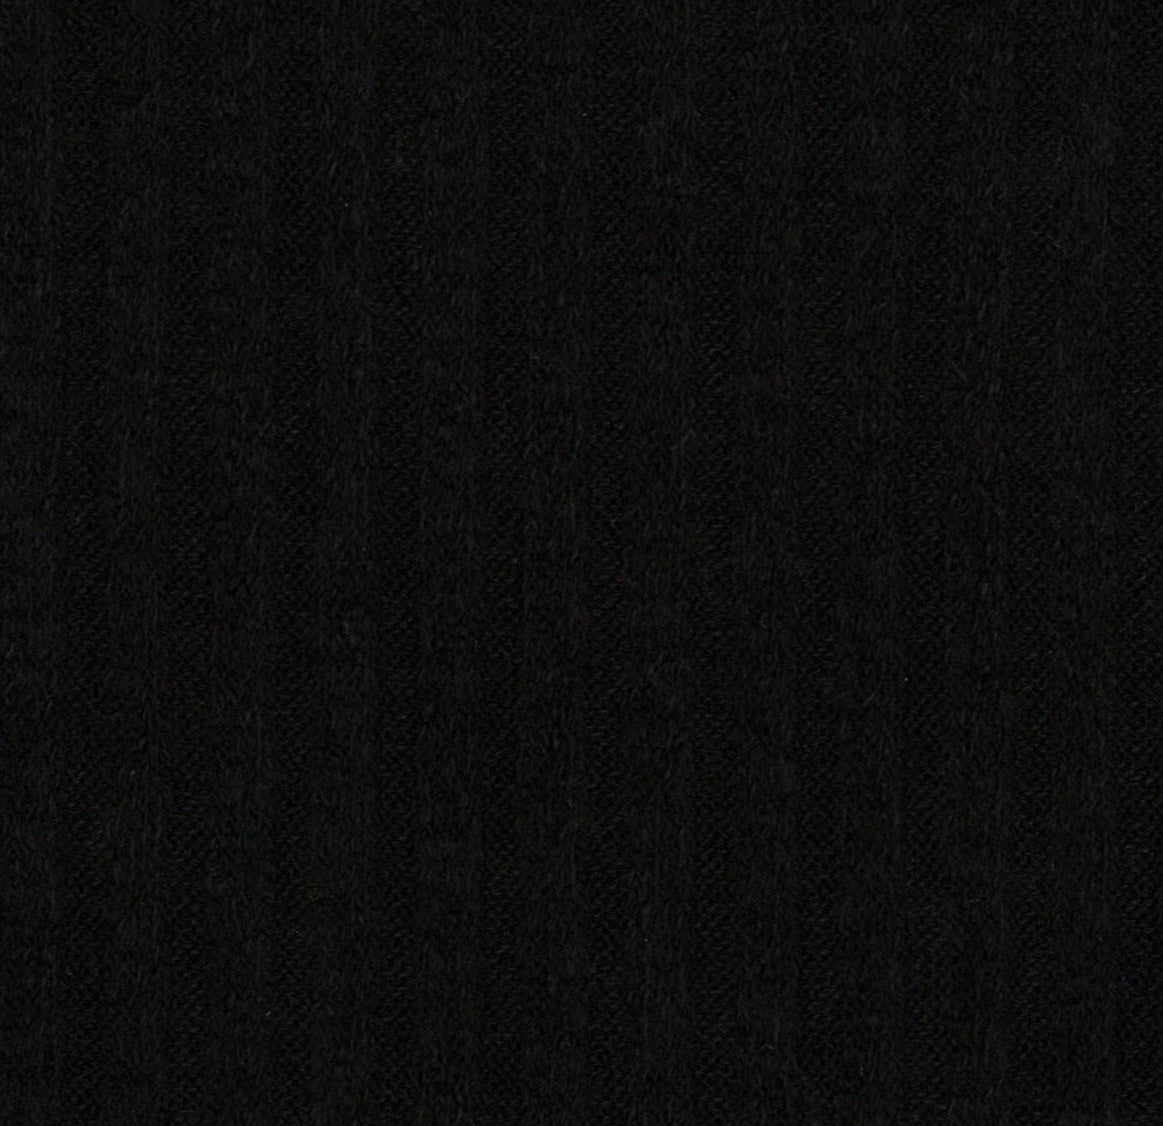 15012-07 Black Rib Plain Dyed Blend 330g/yd 54" black blend knit plain dyed polyester rayon rib spandex Solid Color, Rib - knit fabric - woven fabric - fabric company - fabric wholesale - fabric b2b - fabric factory - high quality fabric - hong kong fabric - fabric hk - acetate fabric - cotton fabric - linen fabric - metallic fabric - nylon fabric - polyester fabric - spandex fabric - chun wing hing - cwh hk - fabric worldwide ship - 針織布 - 梳織布 - 布料公司- 布料批發 - 香港布料 - 秦榮興